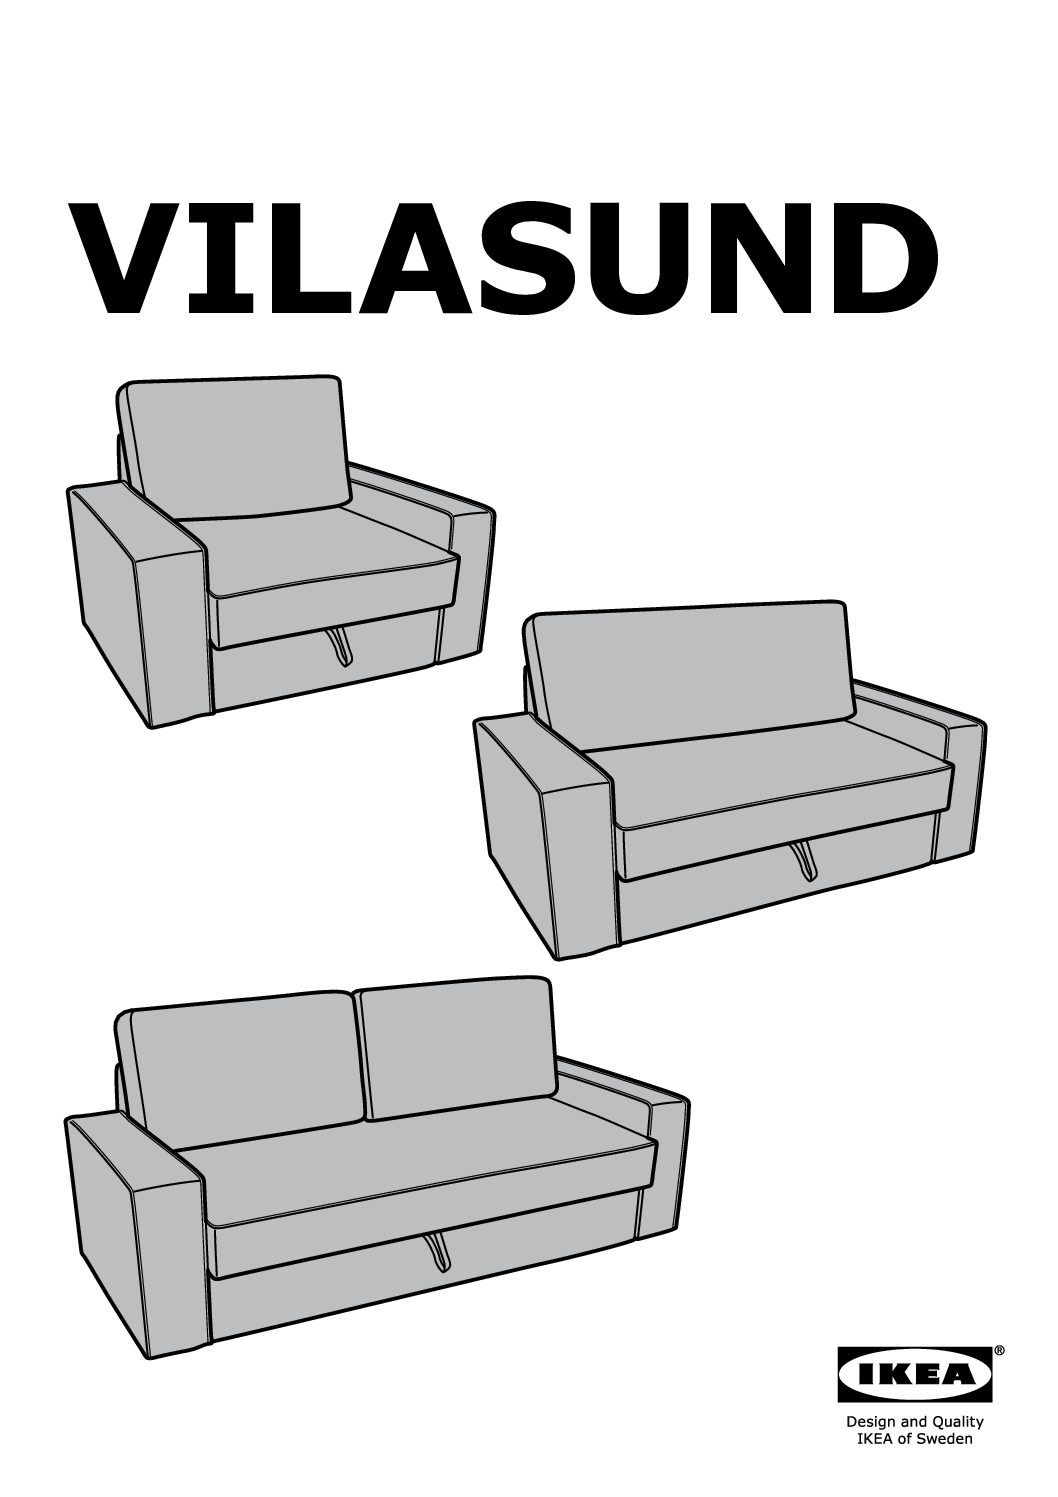 Ikea VILASUND Bedienungsanleitung